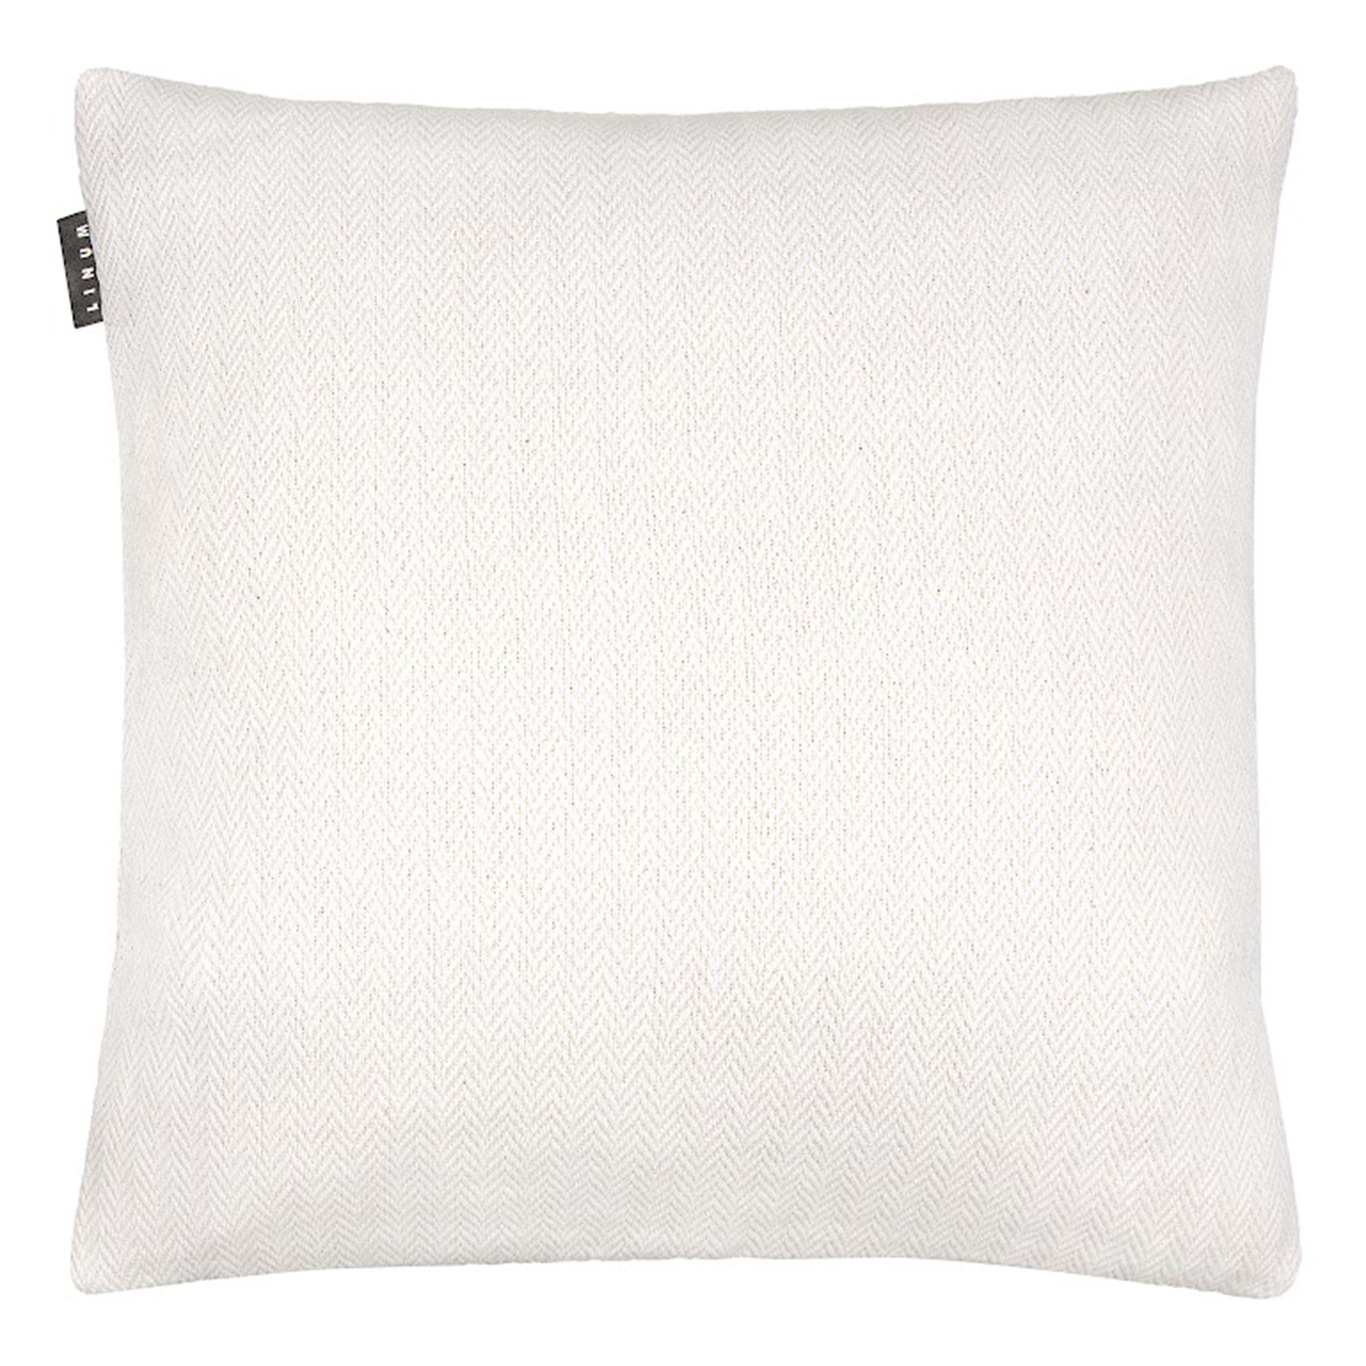 Shepard Cushion Cover 50x50 cm, White